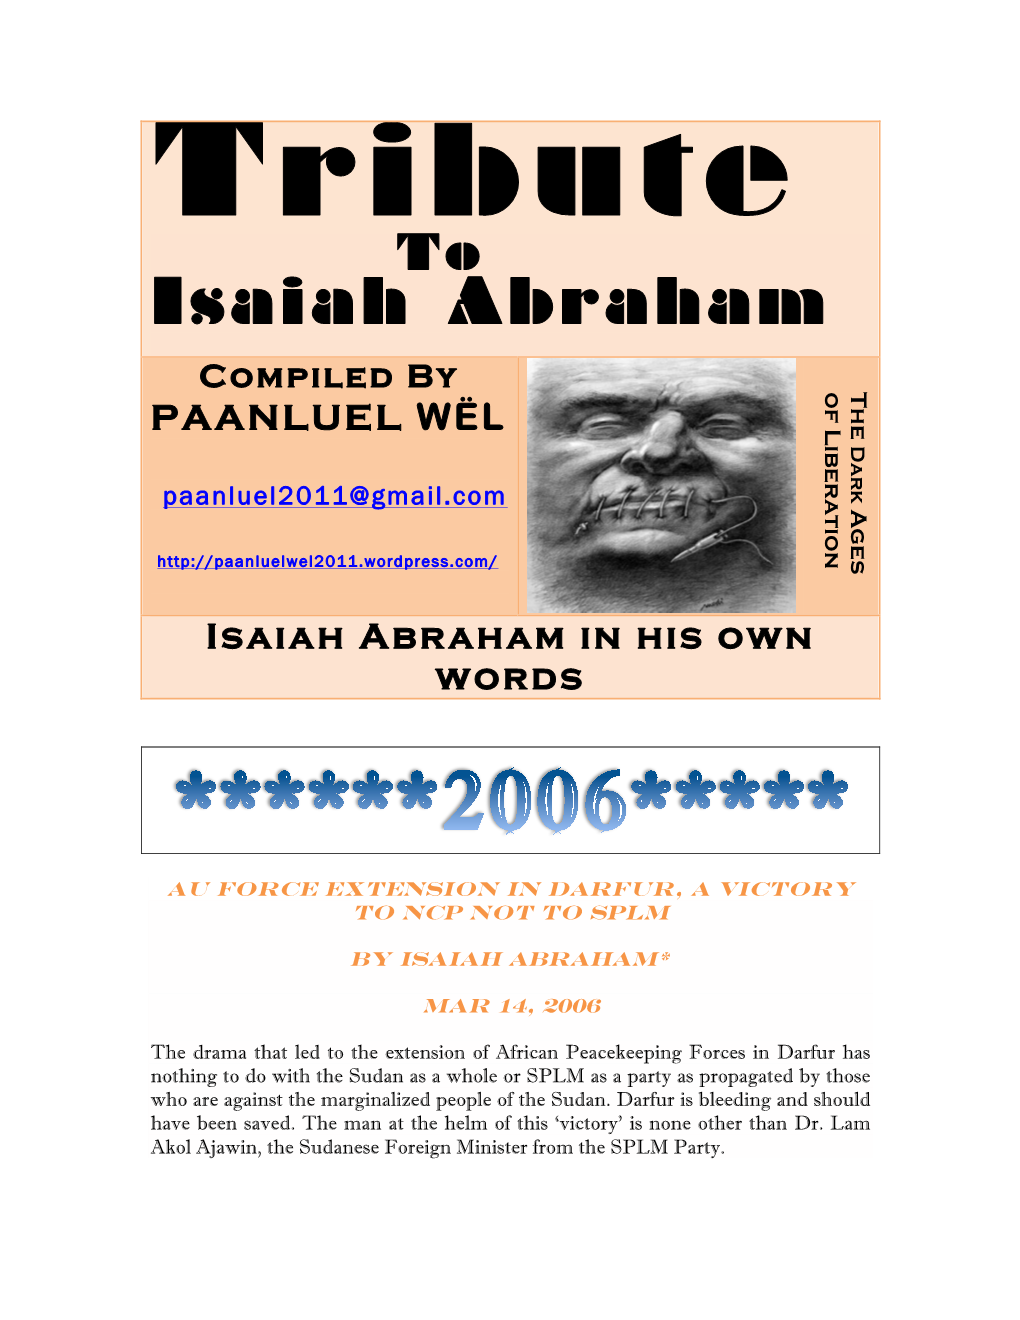 Isaiah Abraham